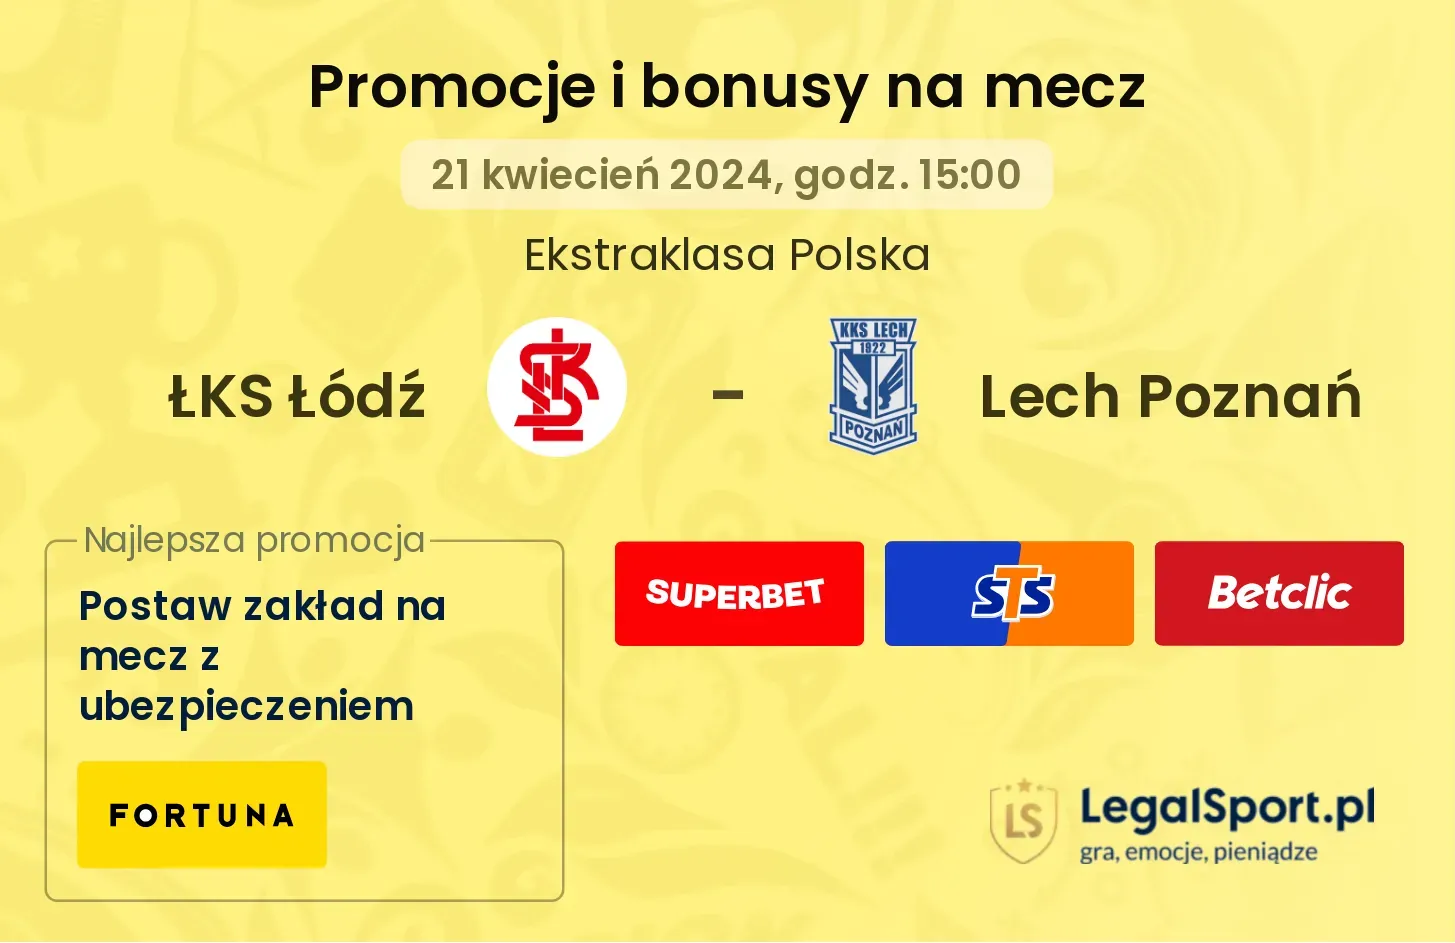 ŁKS Łódź - Lech Poznań bonusy i promocje (21.04, 15:00)